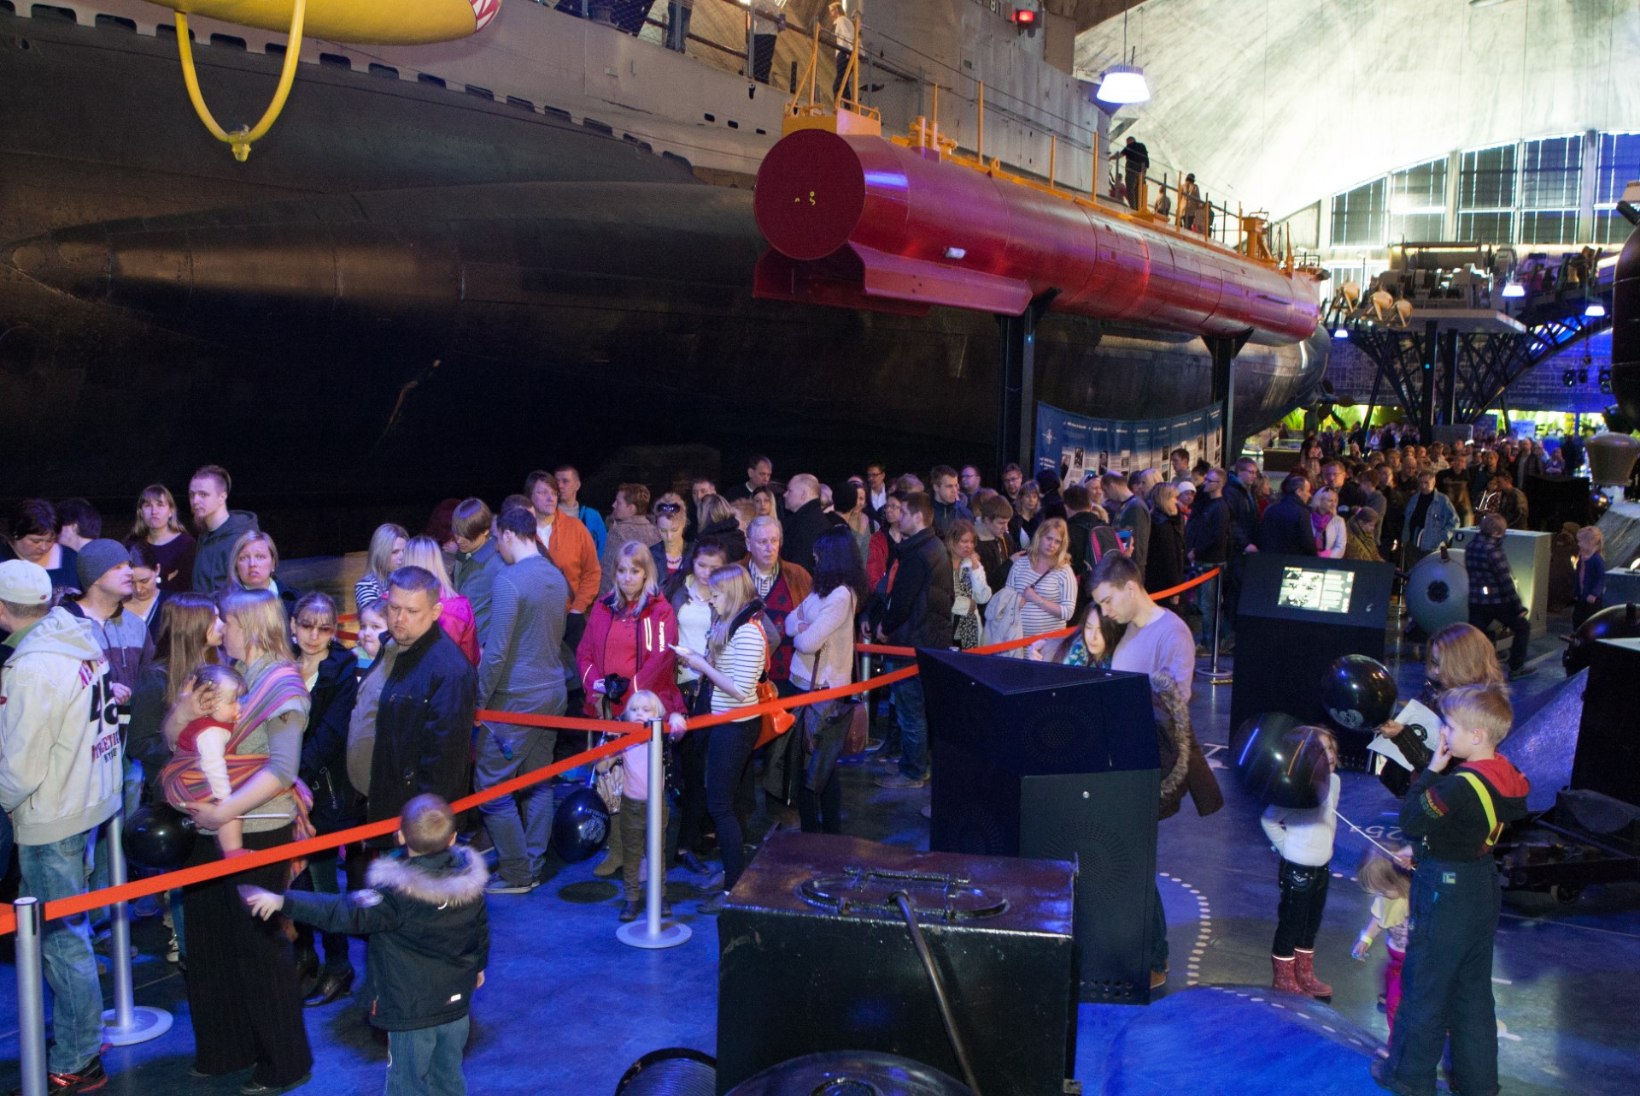 ÕHTULEHE VIDEO | Astrid Kannel Titanicu näitusest: õnnetuse müümine on ebaeetiline!